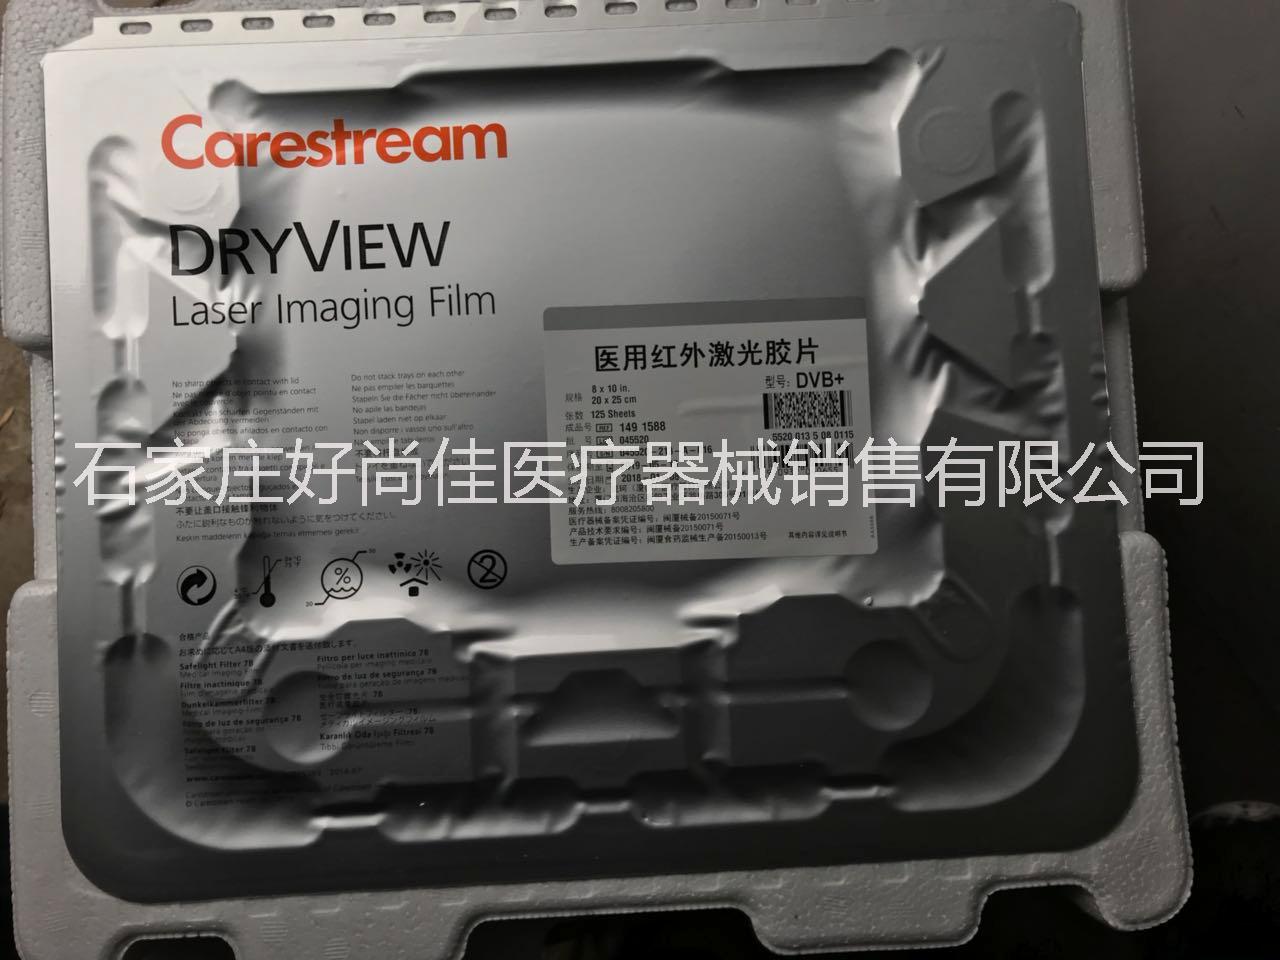 柯达医用激光胶片DVB+10*12柯达6800相机用干式胶片 柯达激光胶片DVB+10*12